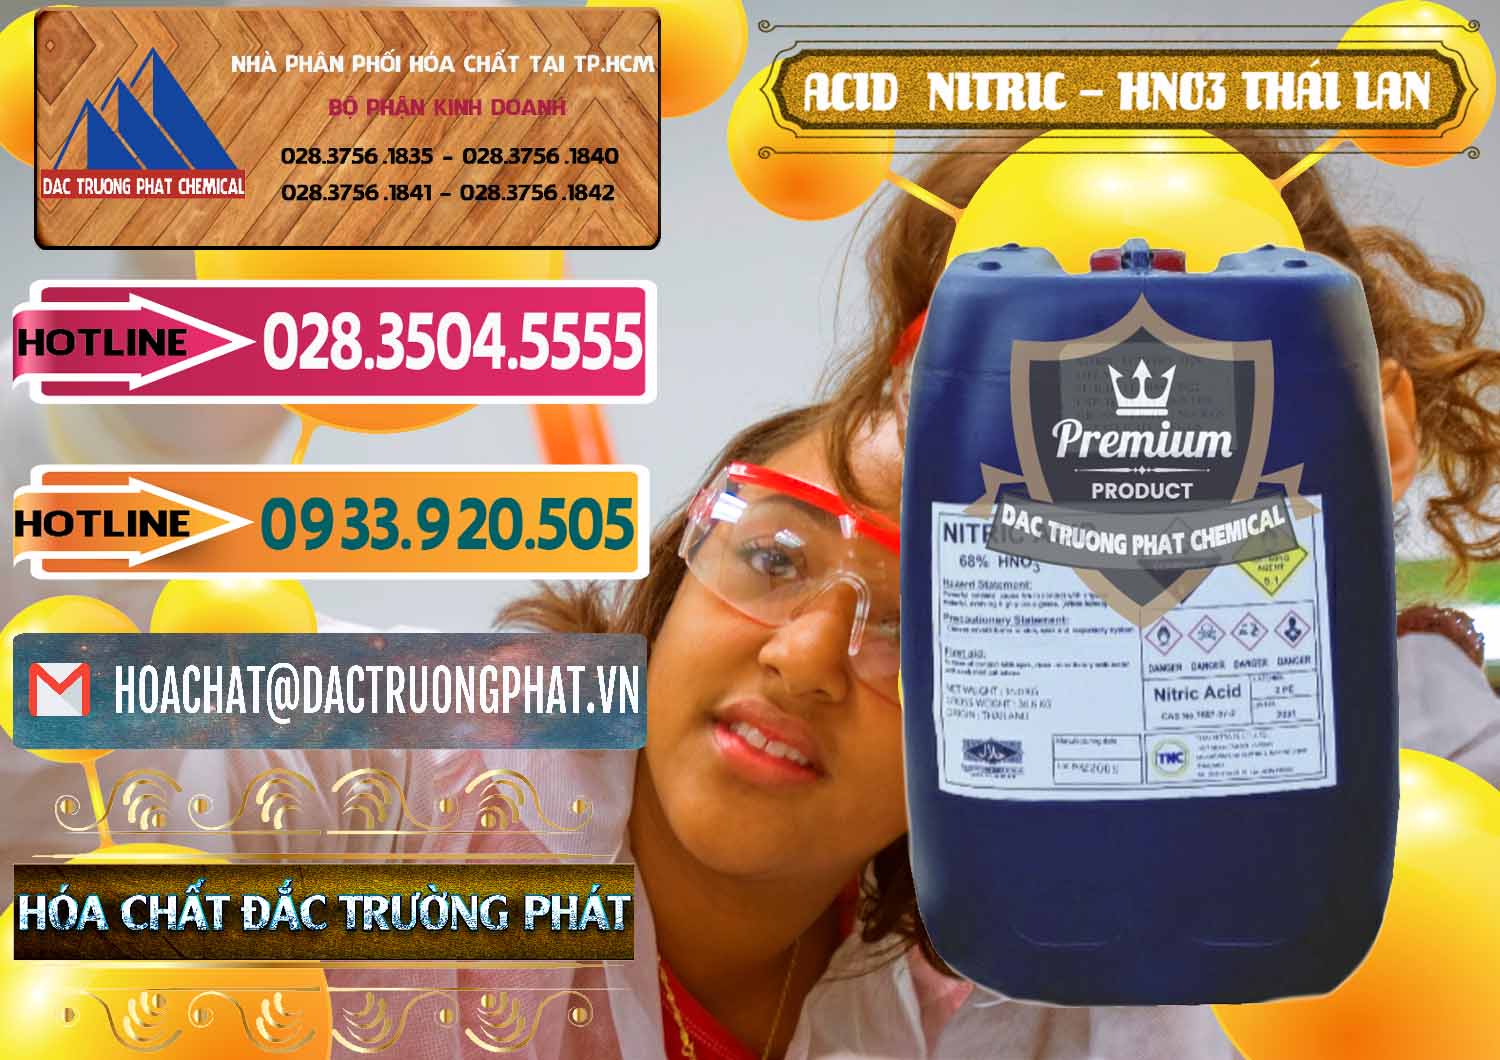 Chuyên bán ( cung cấp ) Acid Nitric – Axit Nitric HNO3 Thái Lan Thailand - 0344 - Chuyên kinh doanh - cung cấp hóa chất tại TP.HCM - dactruongphat.vn